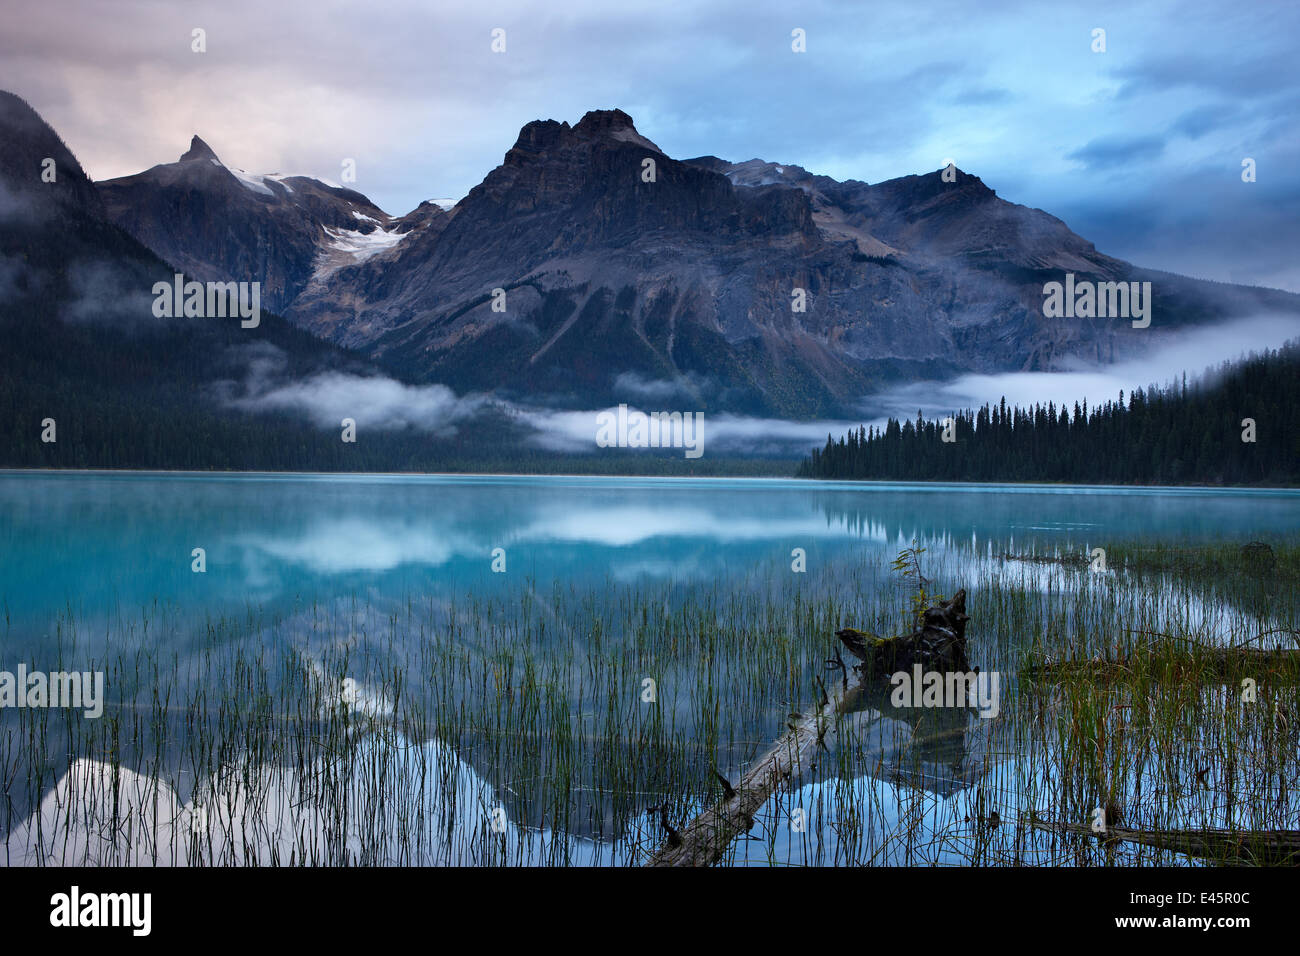 Il Lago di Smeraldo all'alba con i picchi del Presidente vanno ben oltre, Parco Nazionale di Yoho, British Columbia, Canada. Settembre 2009 Foto Stock